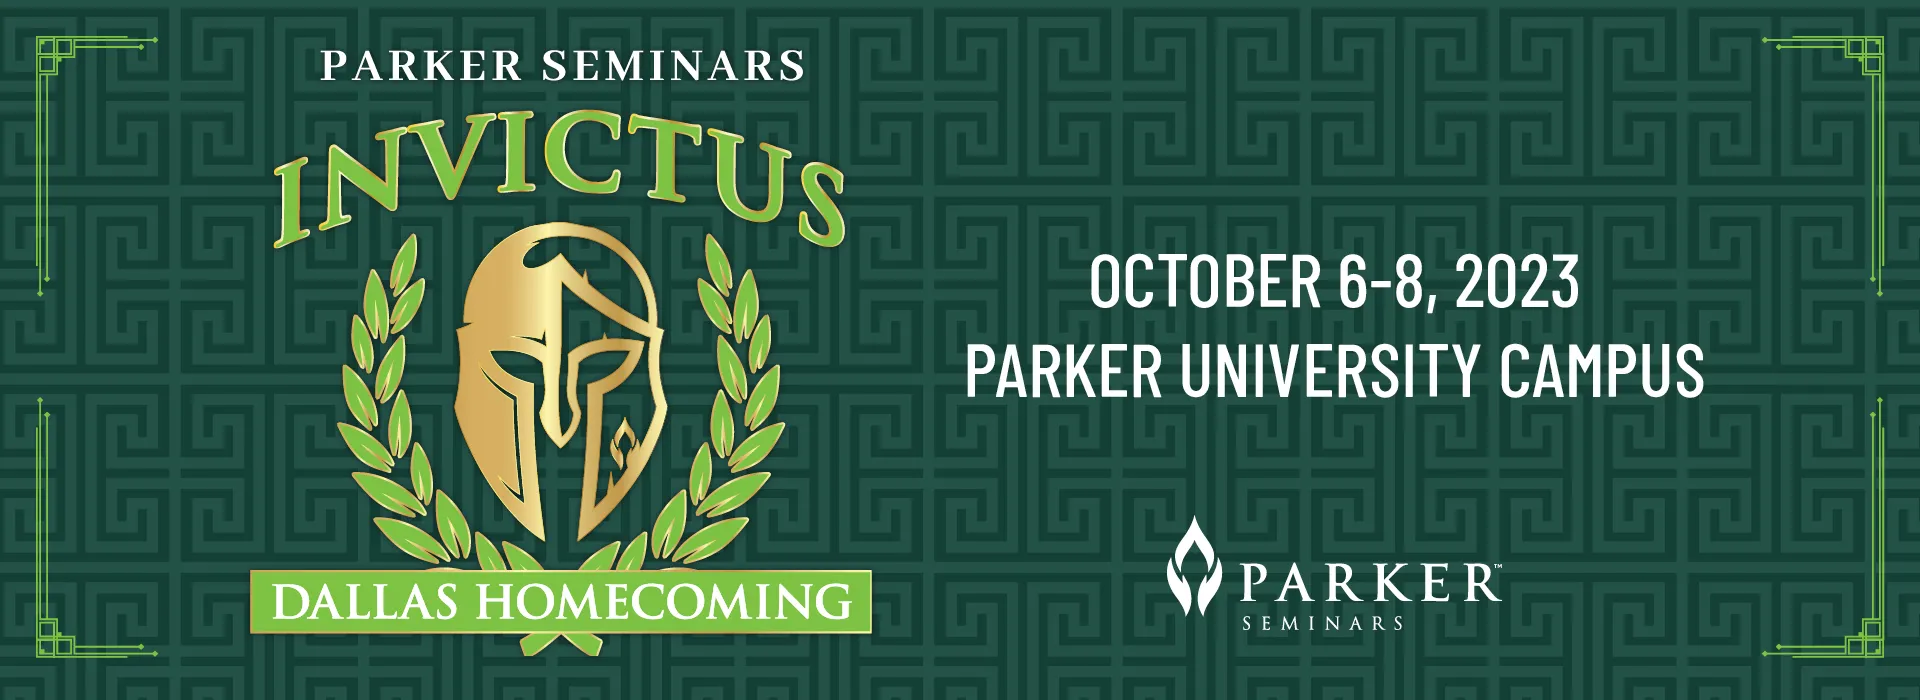 Parker Seminars Invictus Dallas Homecoming